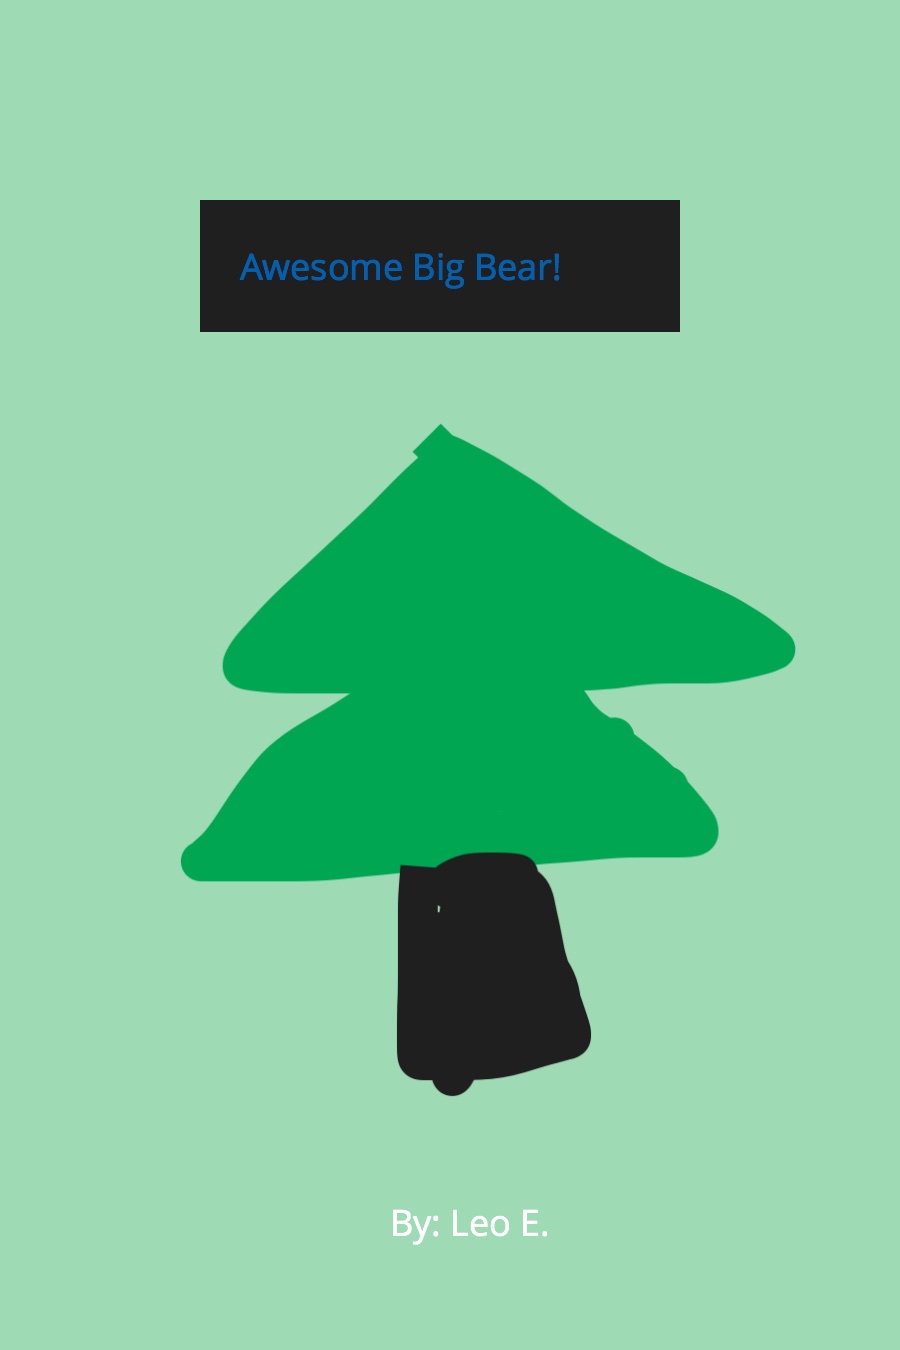 Awesome Big Bear by Leo E